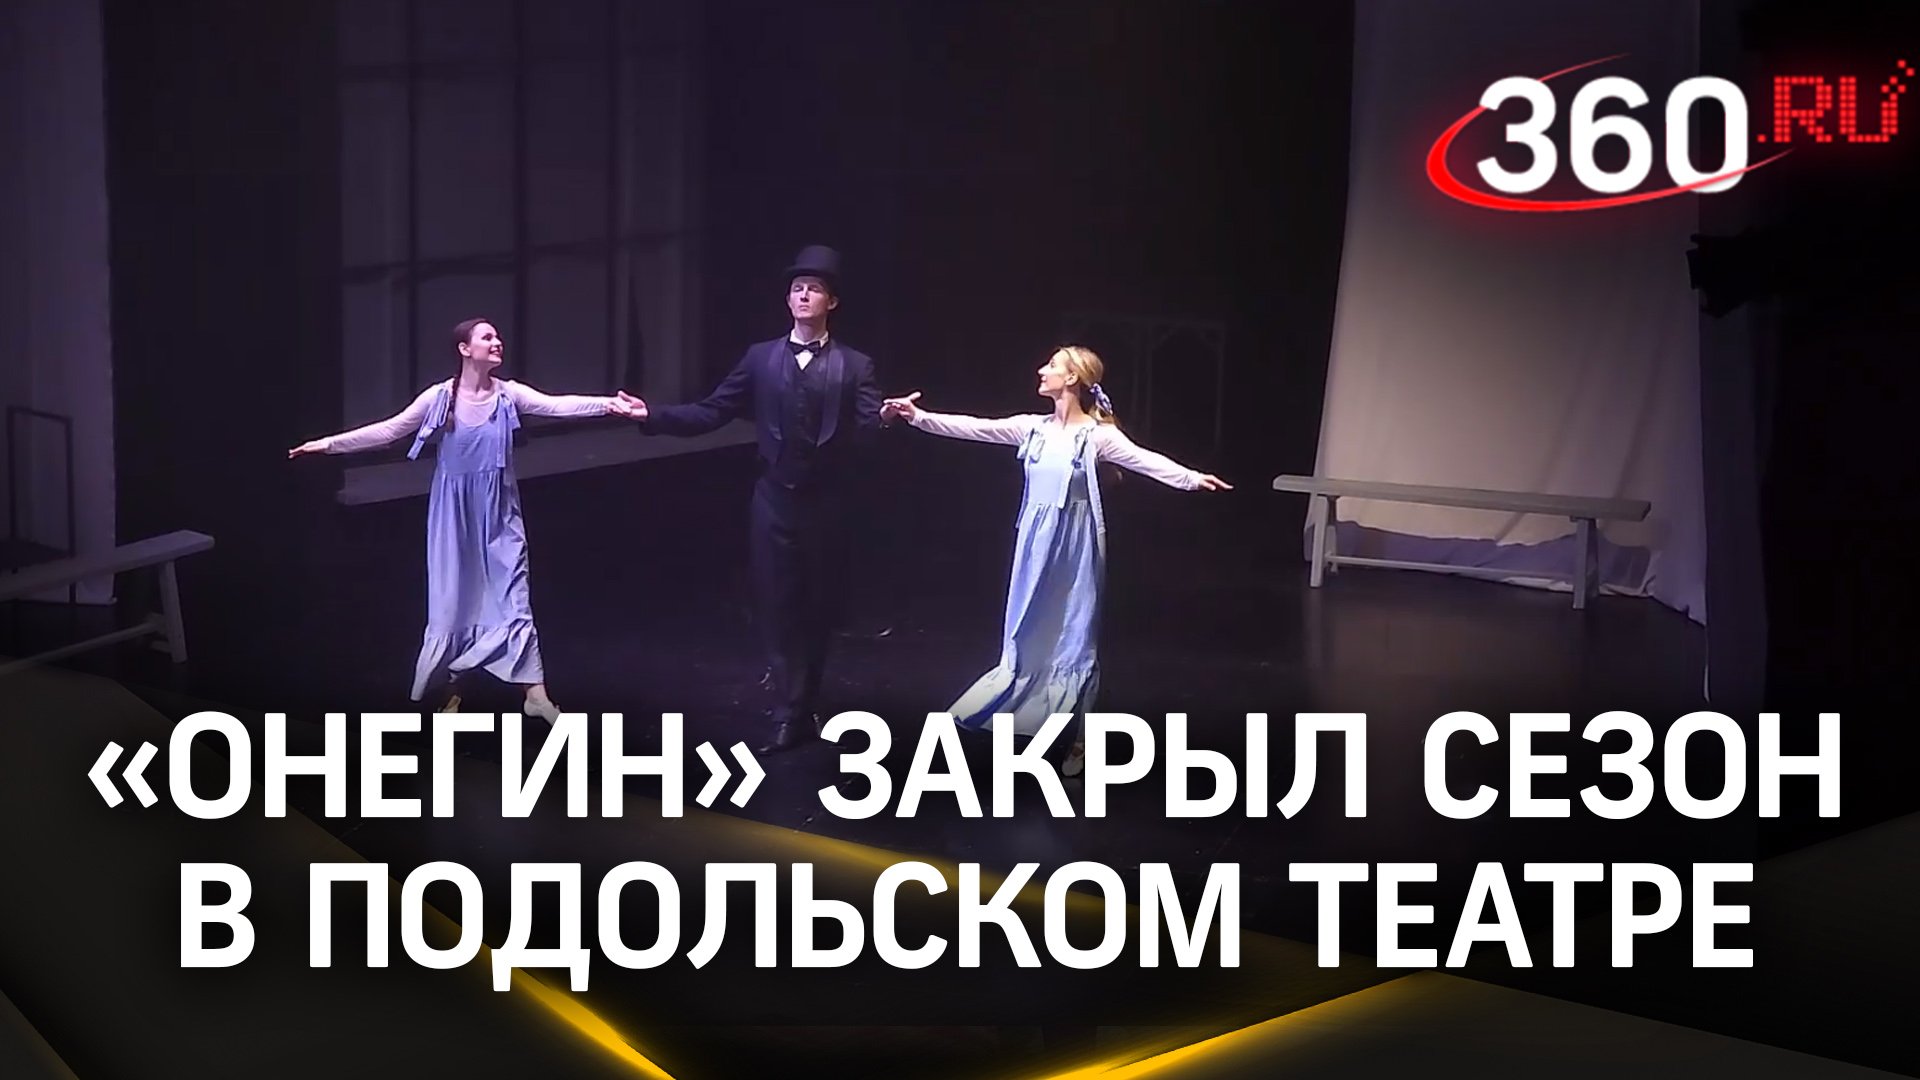 Бессмертная классика: «Евгений Онегин» закрыл сезон в Подольском театре